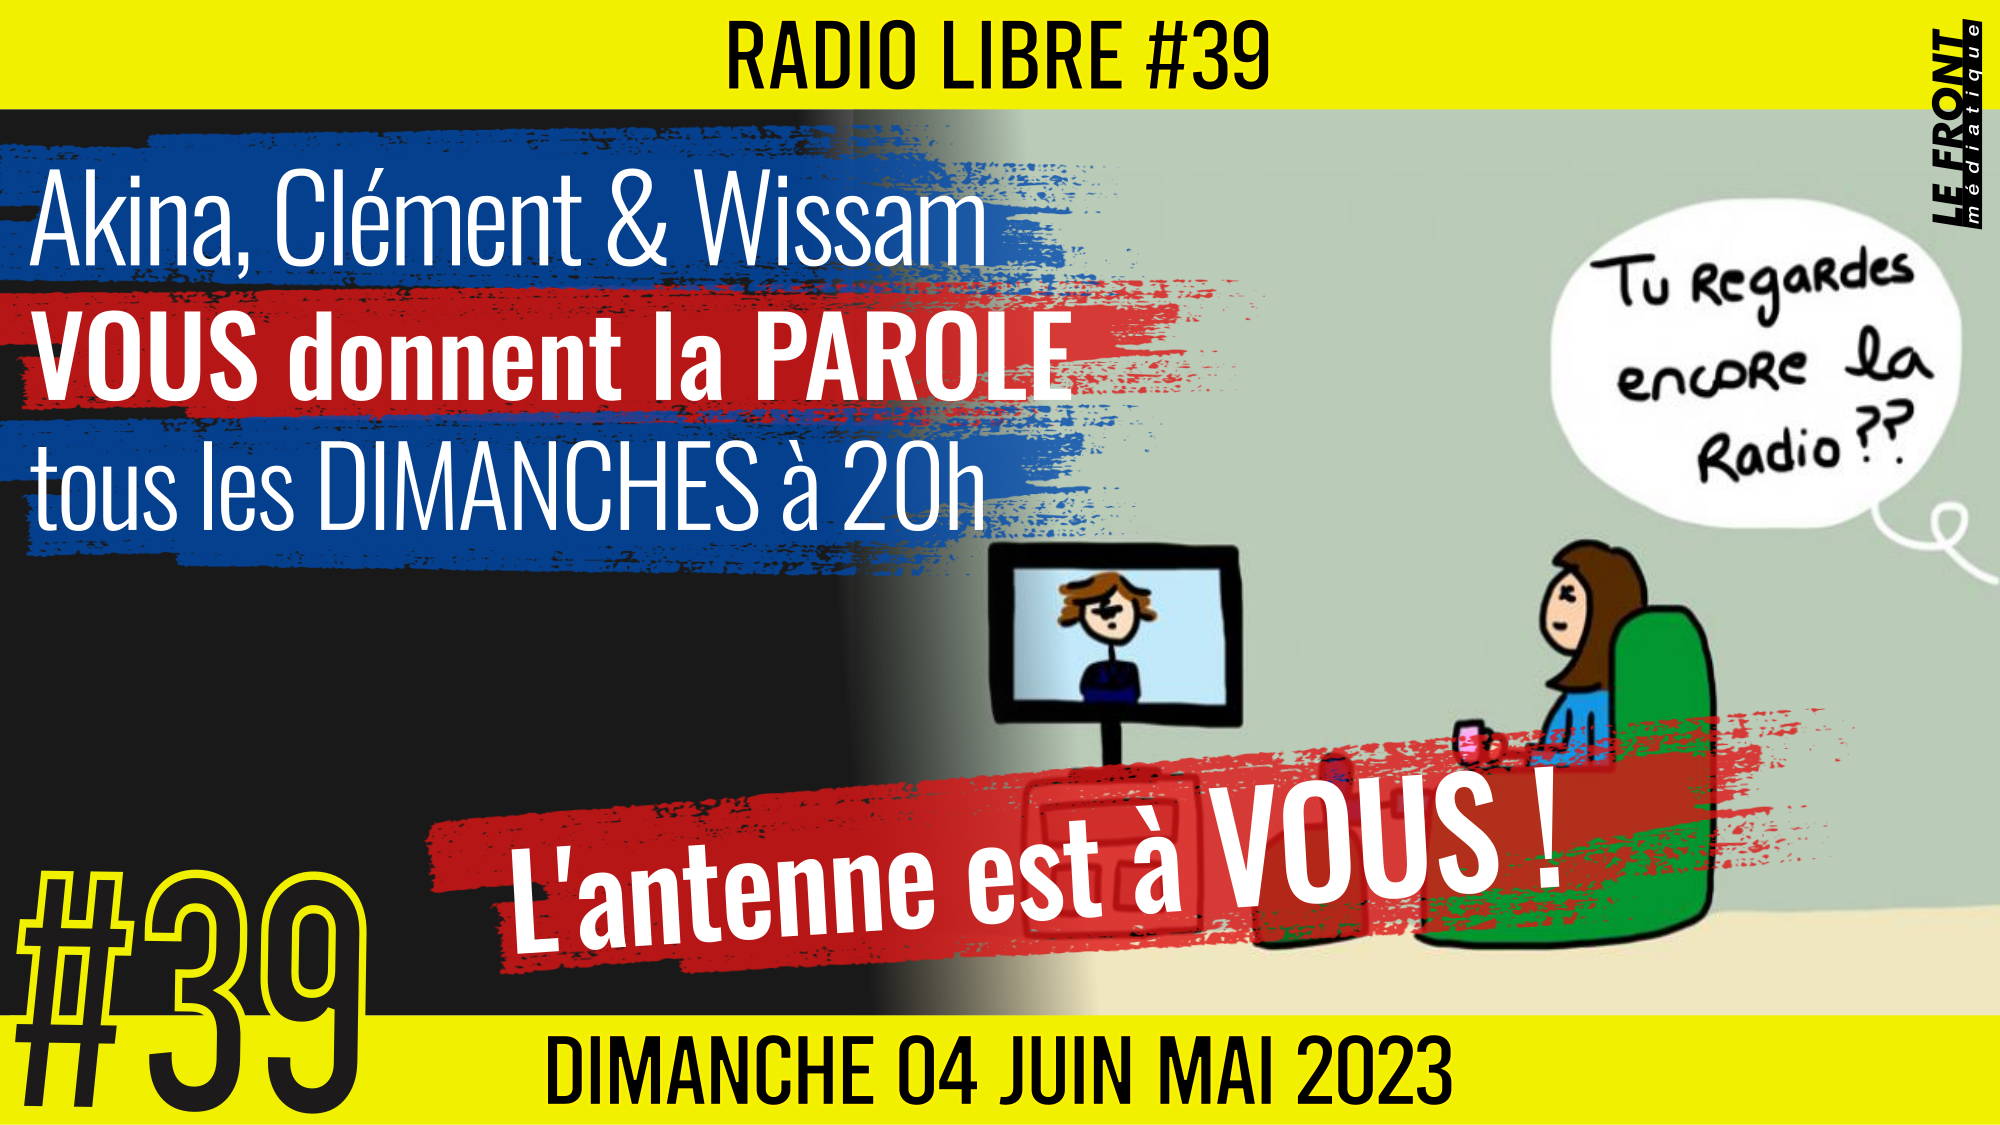 📟 RADIO LIBRE #39🎙La Libre Antenne est à VOUS ! 🗣 Akina, Clém & Wissam 📆 04-06-2023